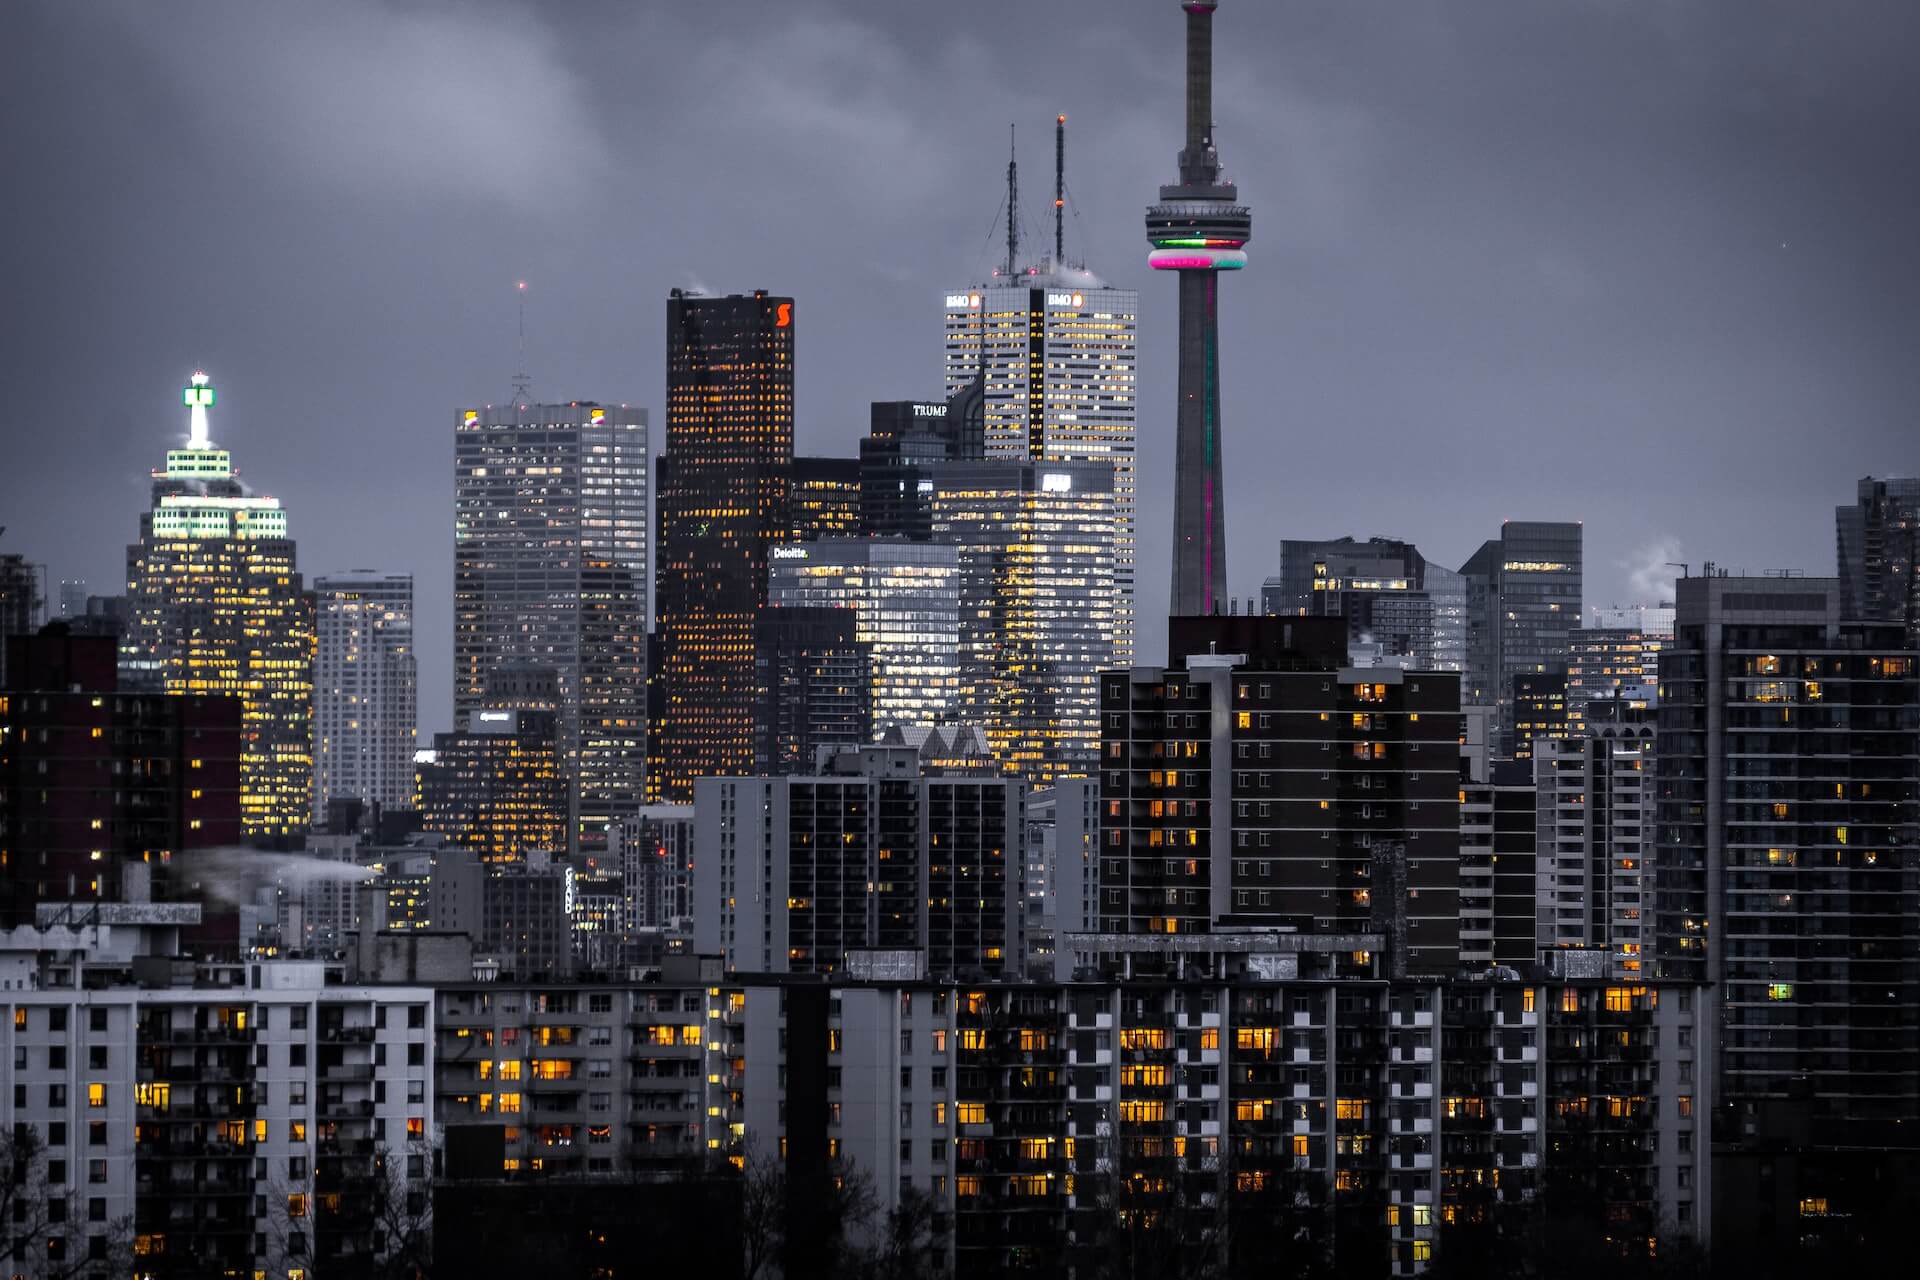 Toronto cityscape